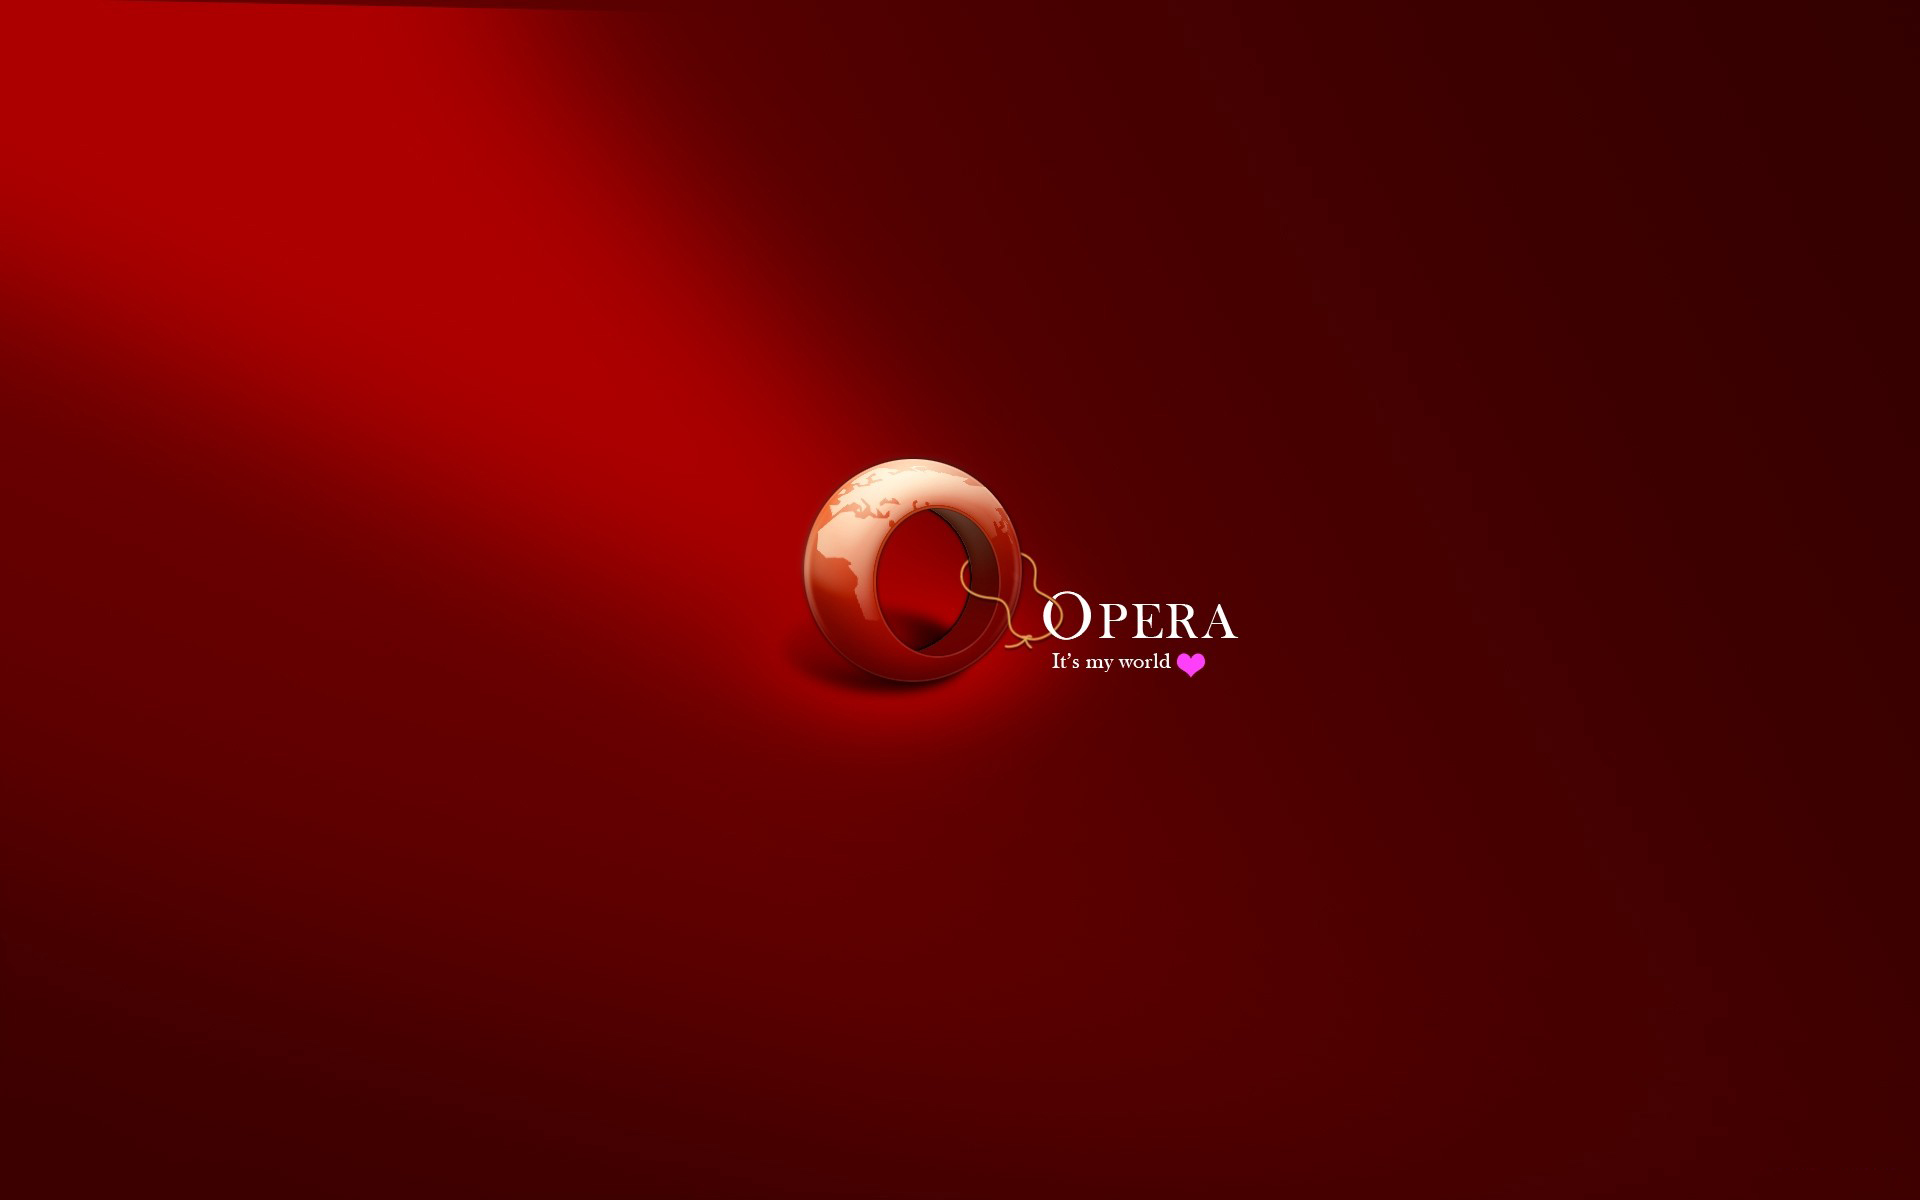 Opera Browser Logo Desktop Wallpaper Uploaded By Tcherniy